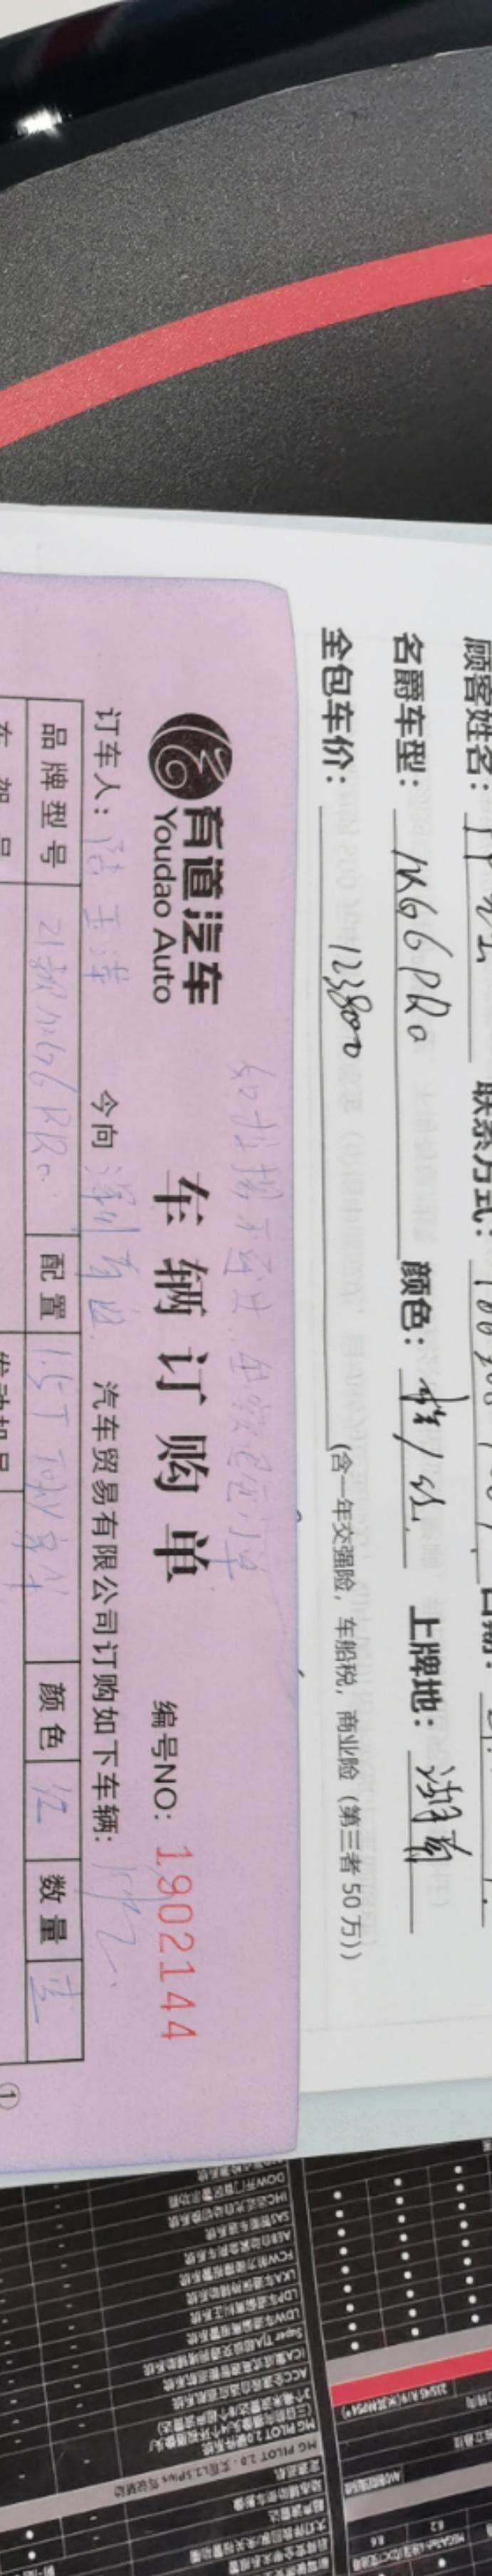 名爵6 老铁们今天在深圳刚定一台MG6pro豪华版（红色），131800万包免息按揭，保险，购置税。这个价格我买贵了吗？等车还要45天